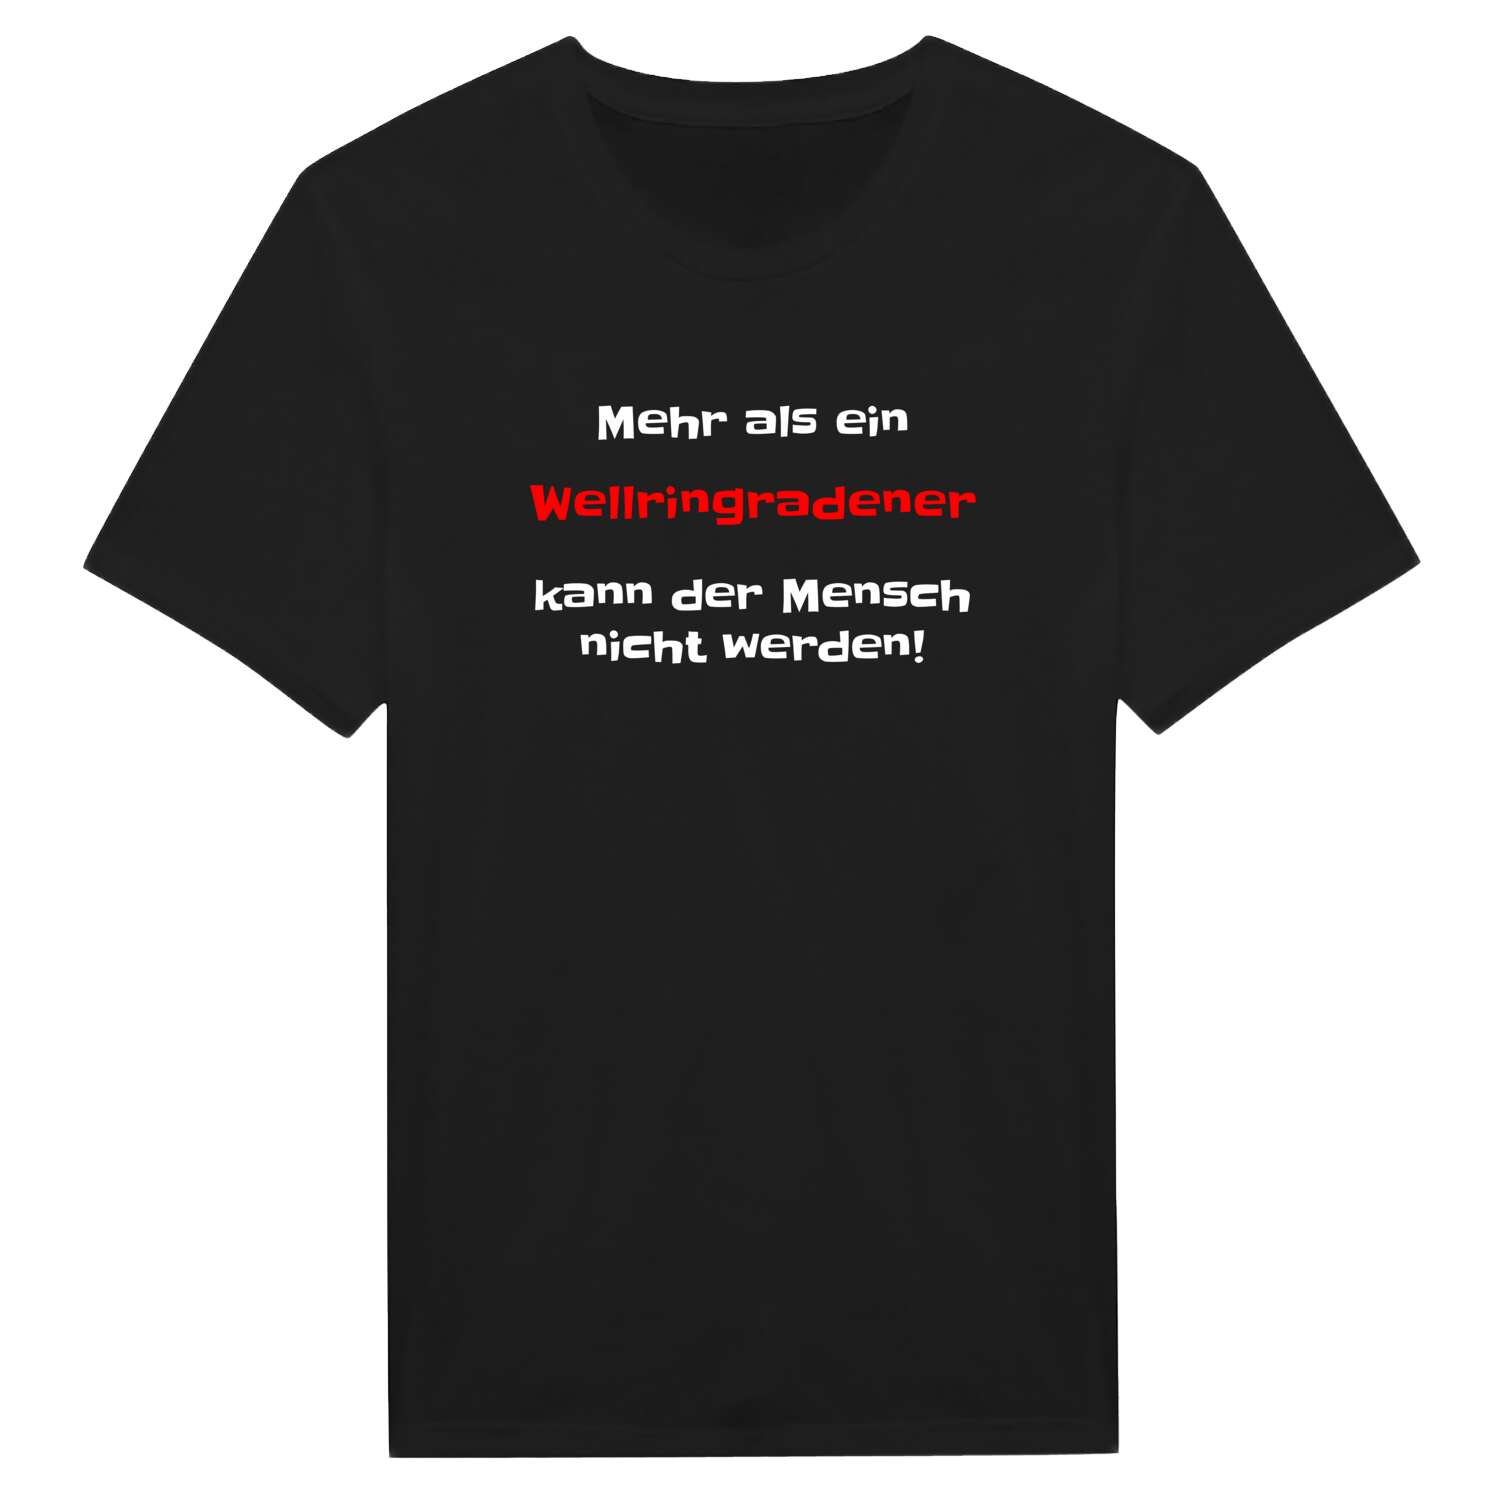 Wellringrade T-Shirt »Mehr als ein«